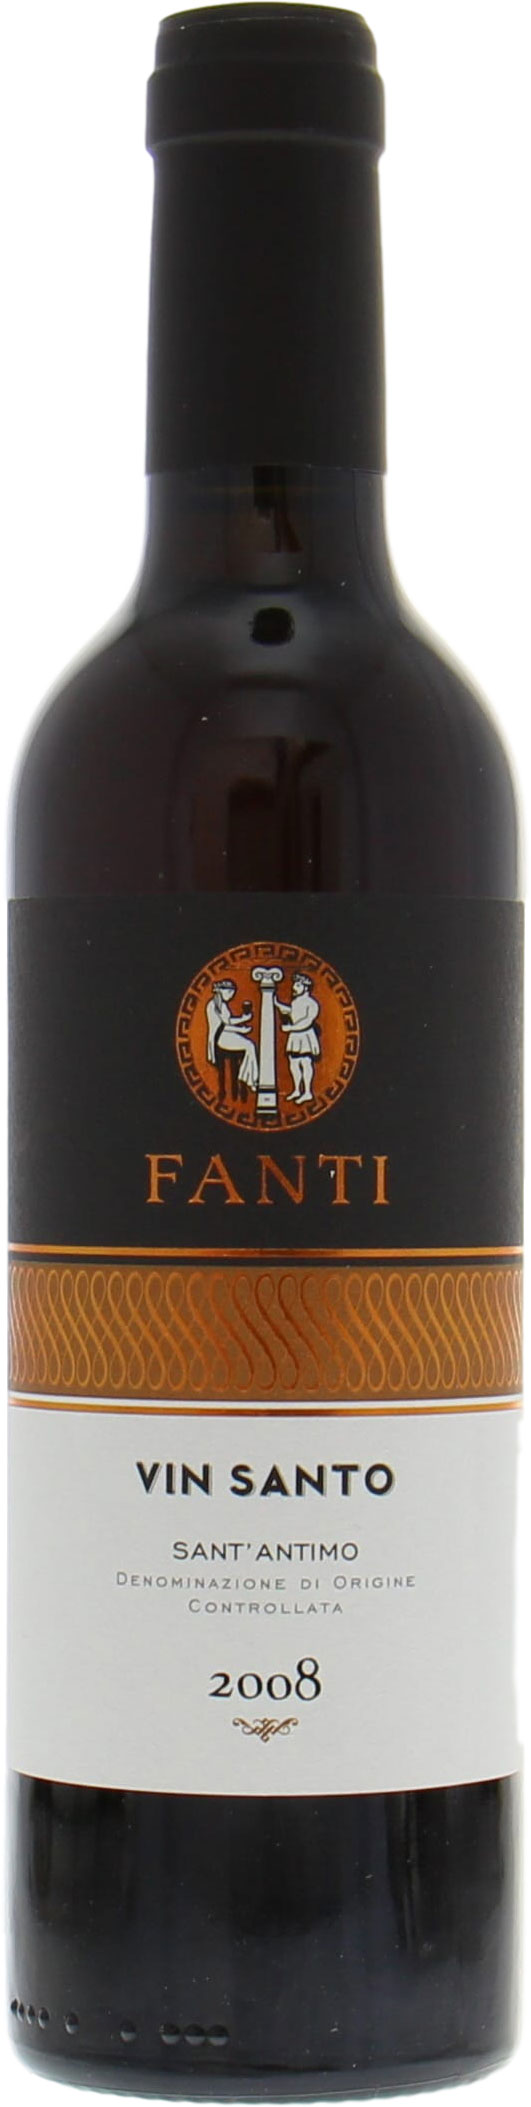 Tenuta Fanti - Sant'Antimo Vin Santo 2008